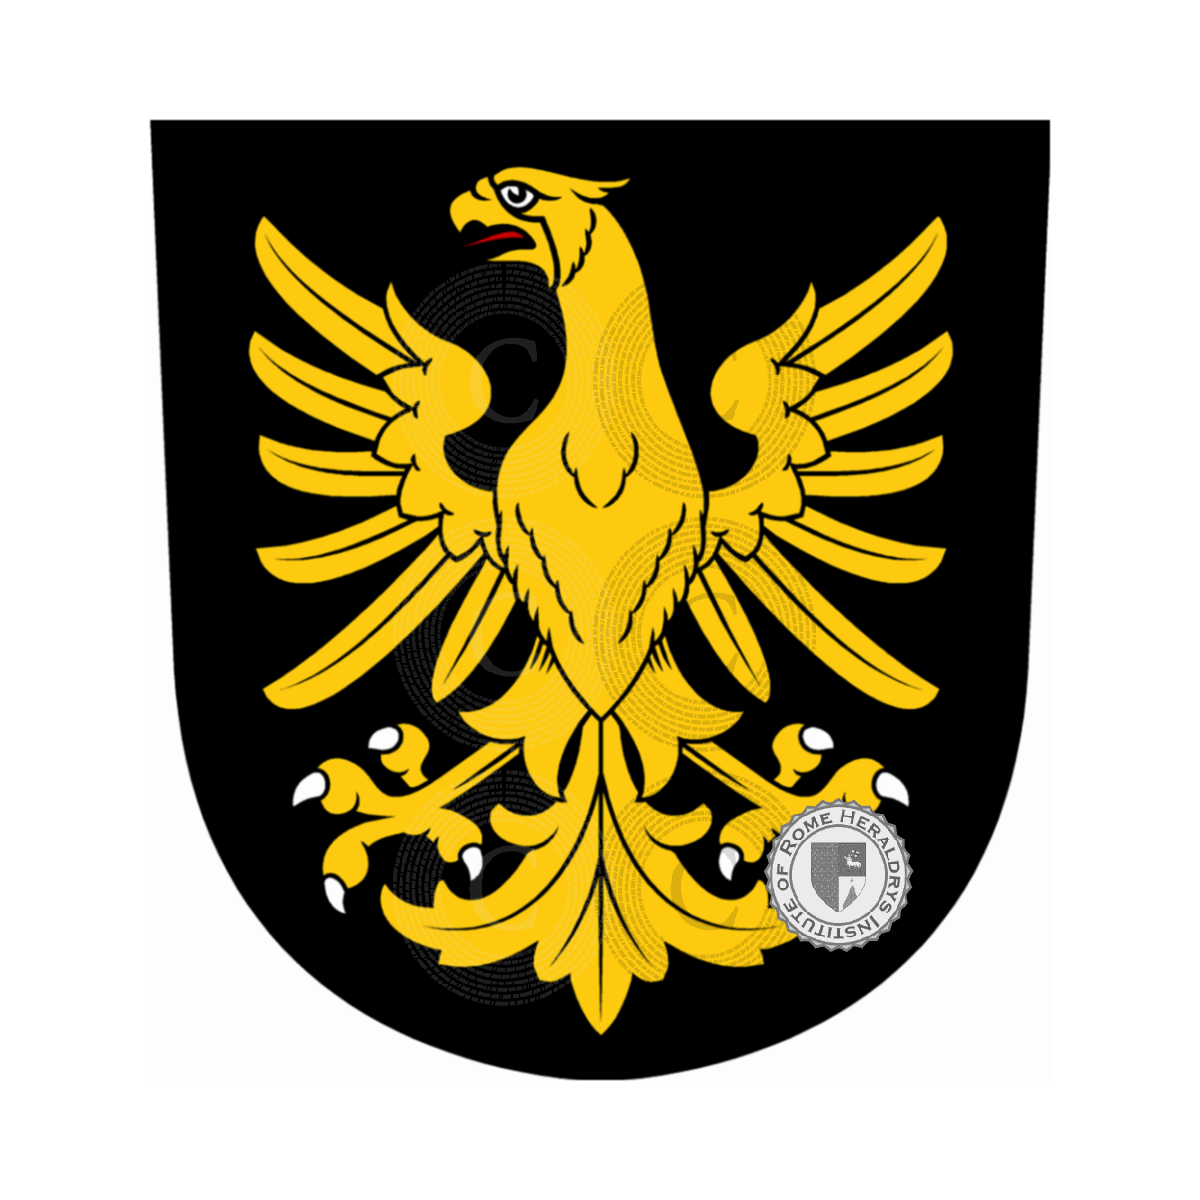 Stemma della famigliaSchwarz, Schwarz auf Artelshofen,Schwarz-Jacobine,Schwarzach de Wagenhausen